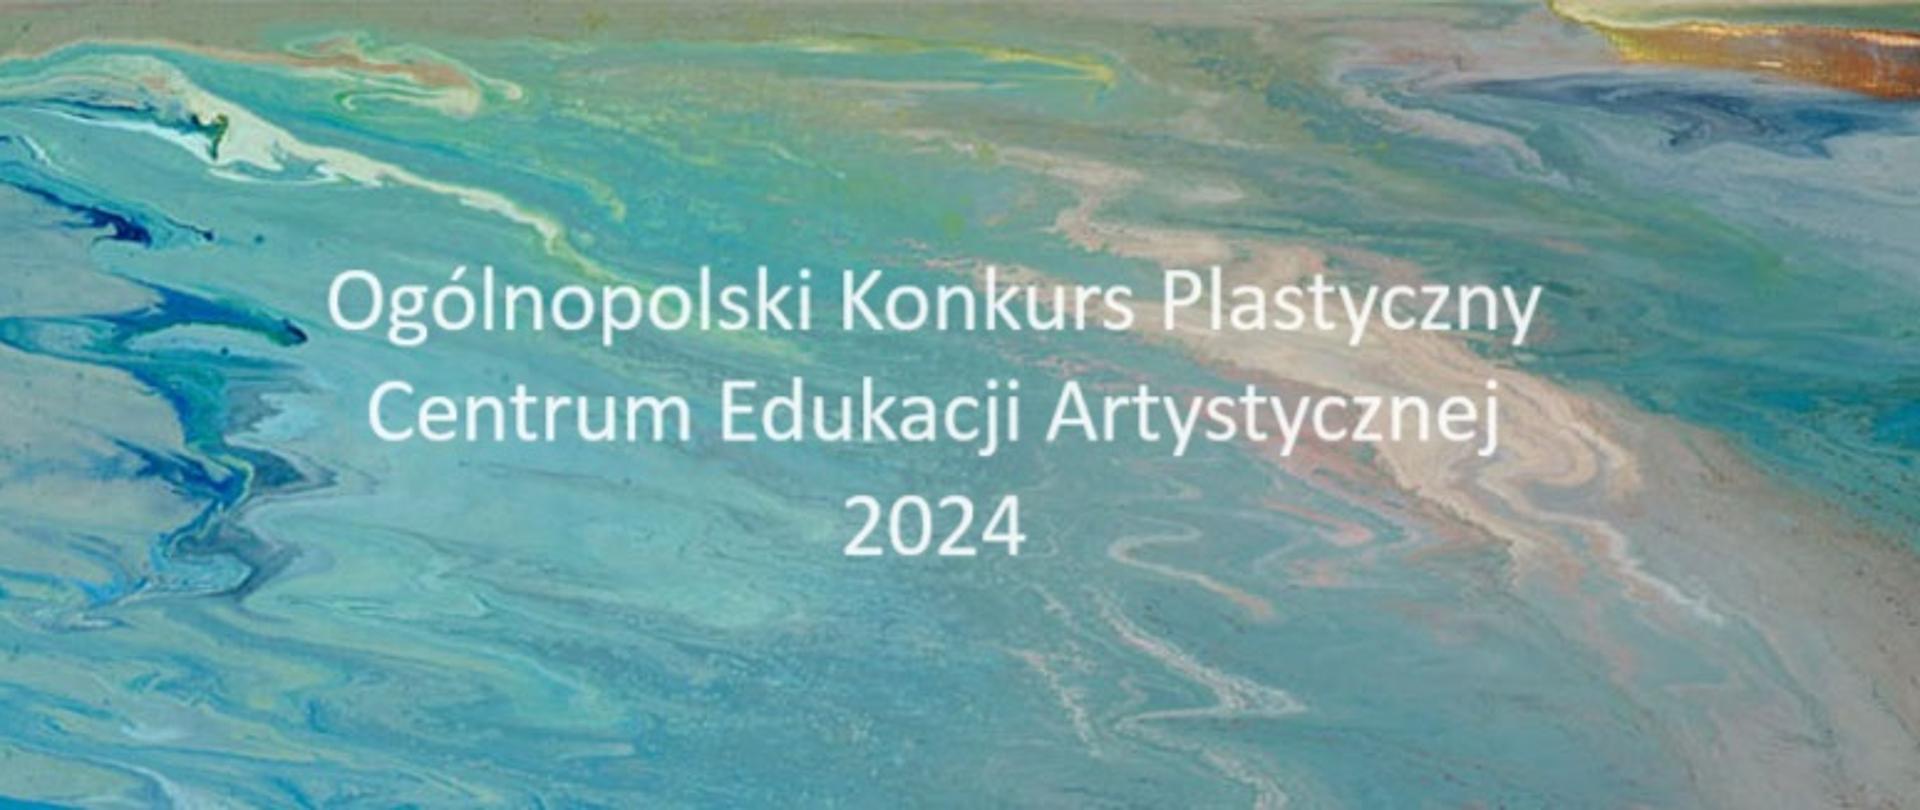 Kolorowe tło w odcieniach szarości z napisem "Ogólnopolski Konkurs Plastyczny Centrum Edukacji Artystycznej 2024"